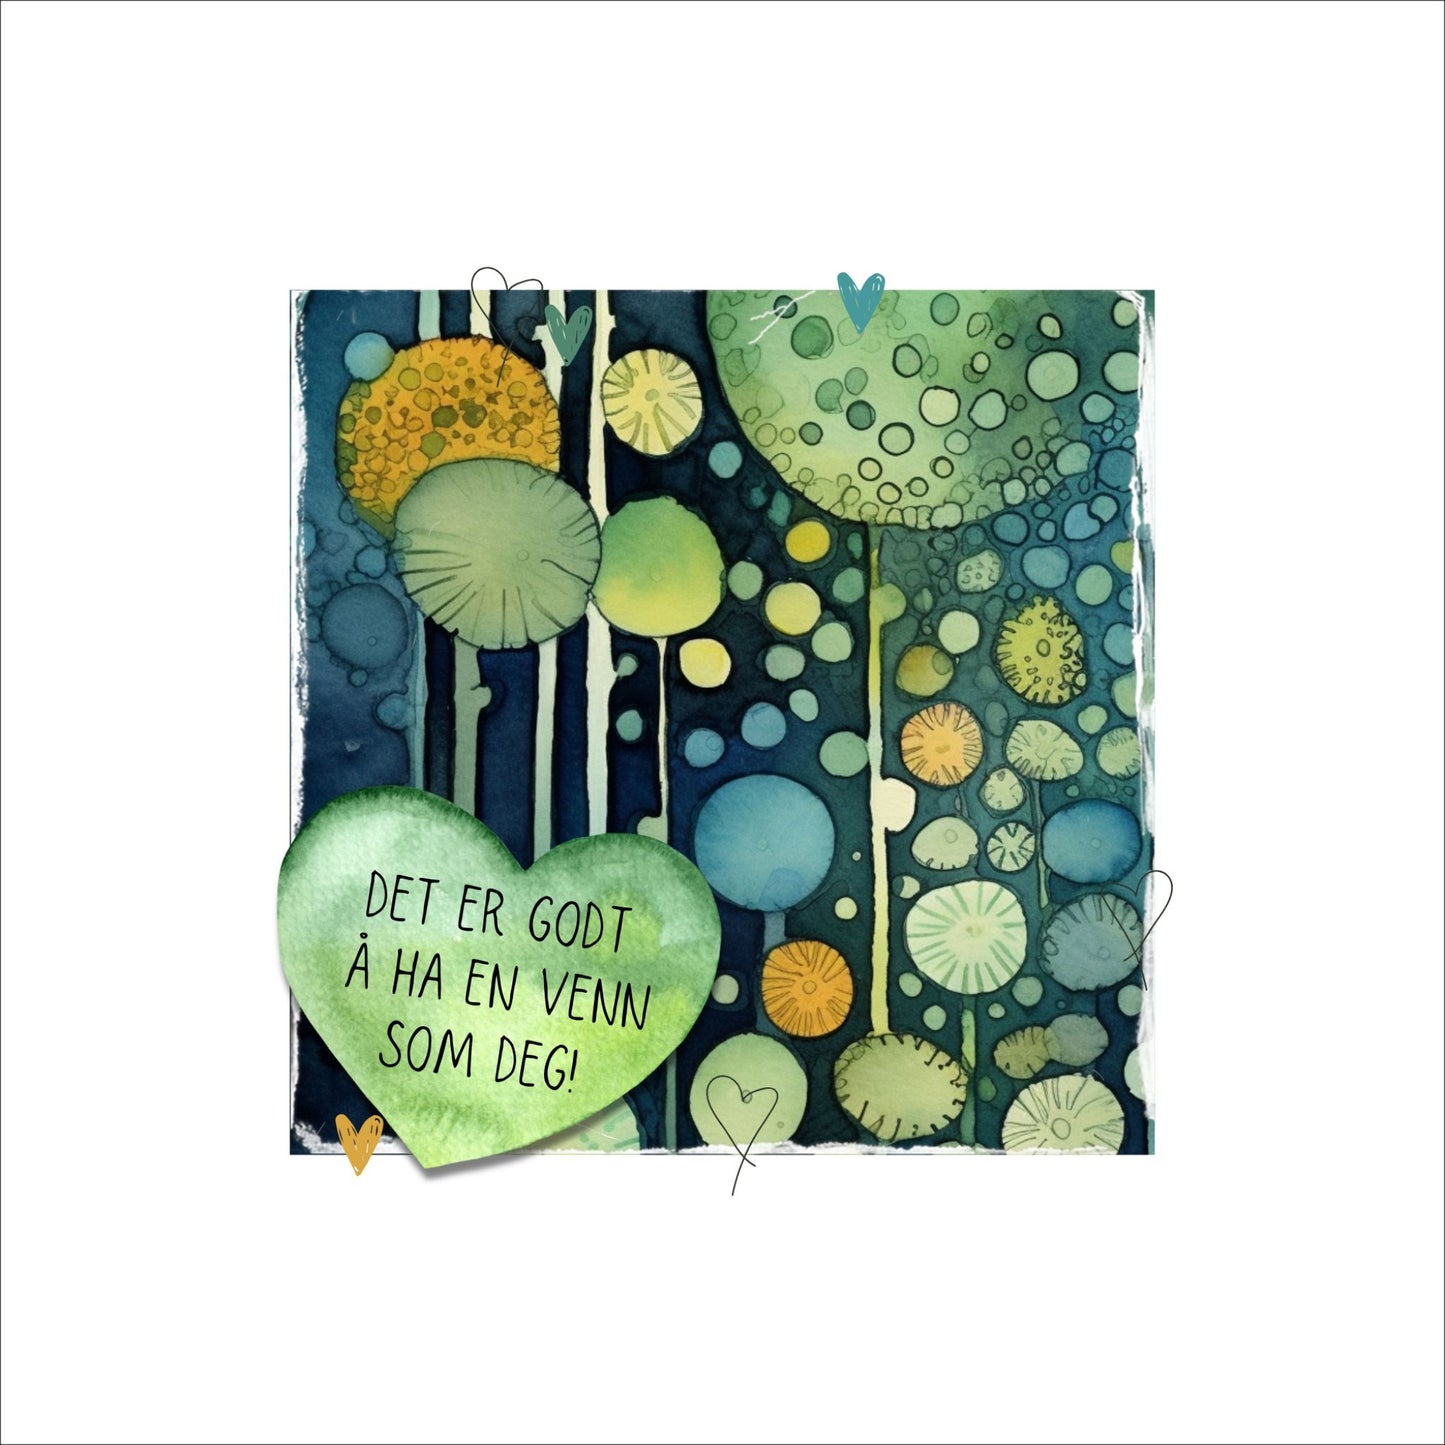 Plakat med tekst "Det er godt å ha en venn som deg" - og et motiv med farger i grønn, blått og oransje. Med hvit kant på 4 cm.